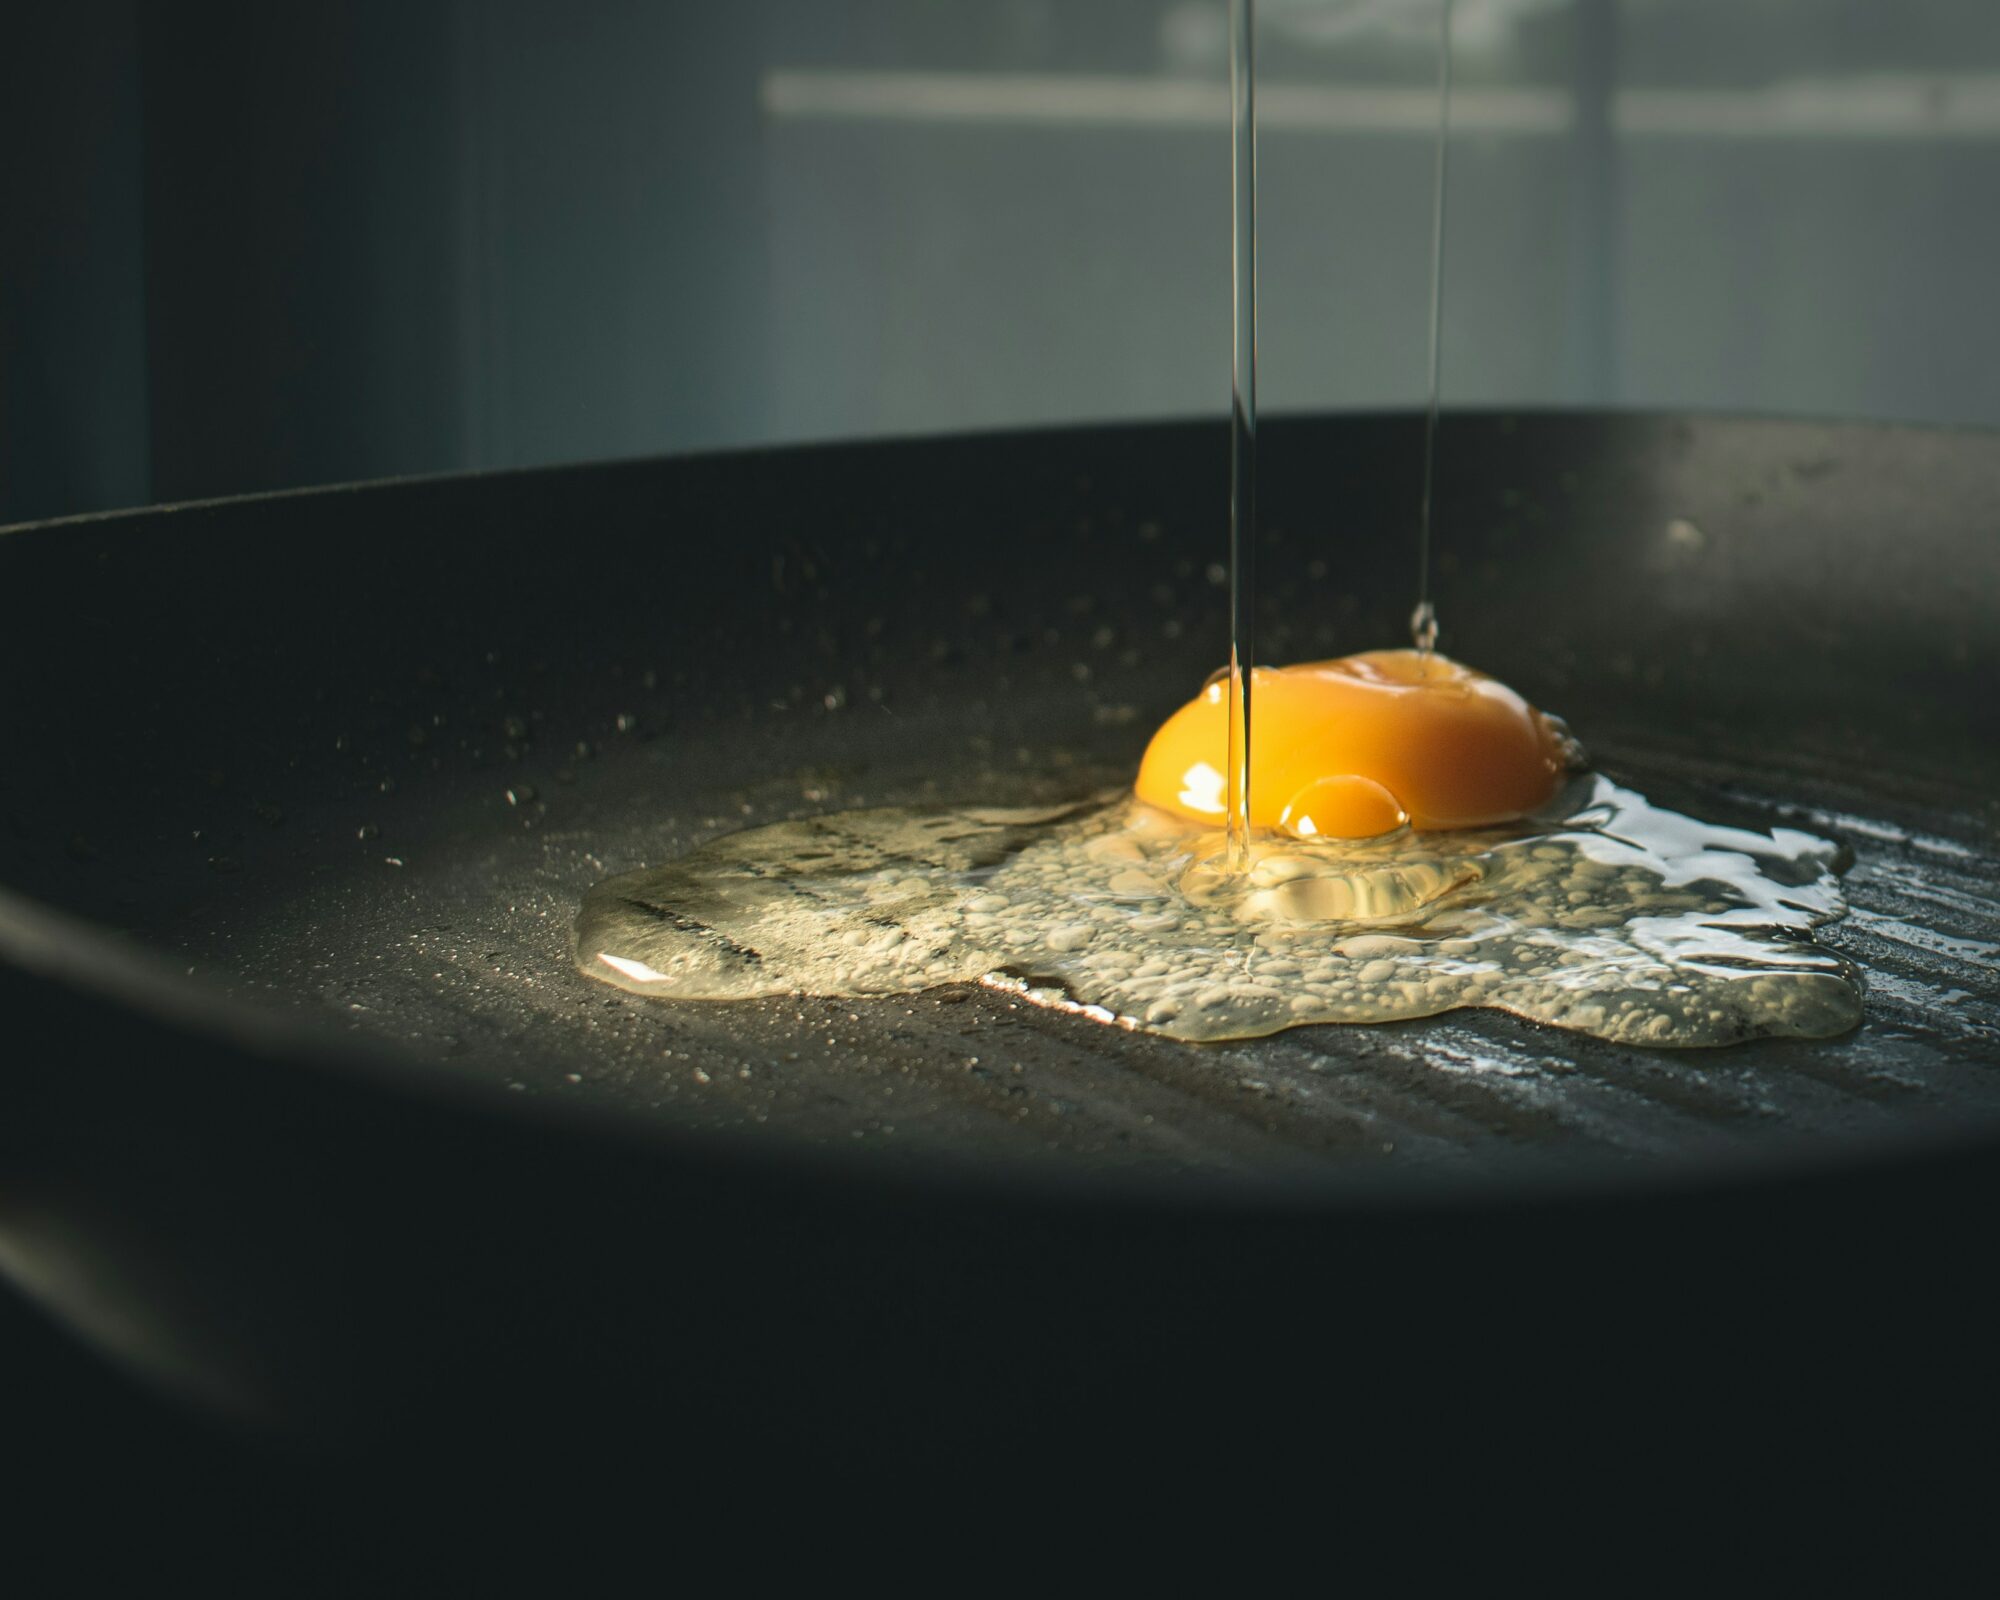 egg in pan